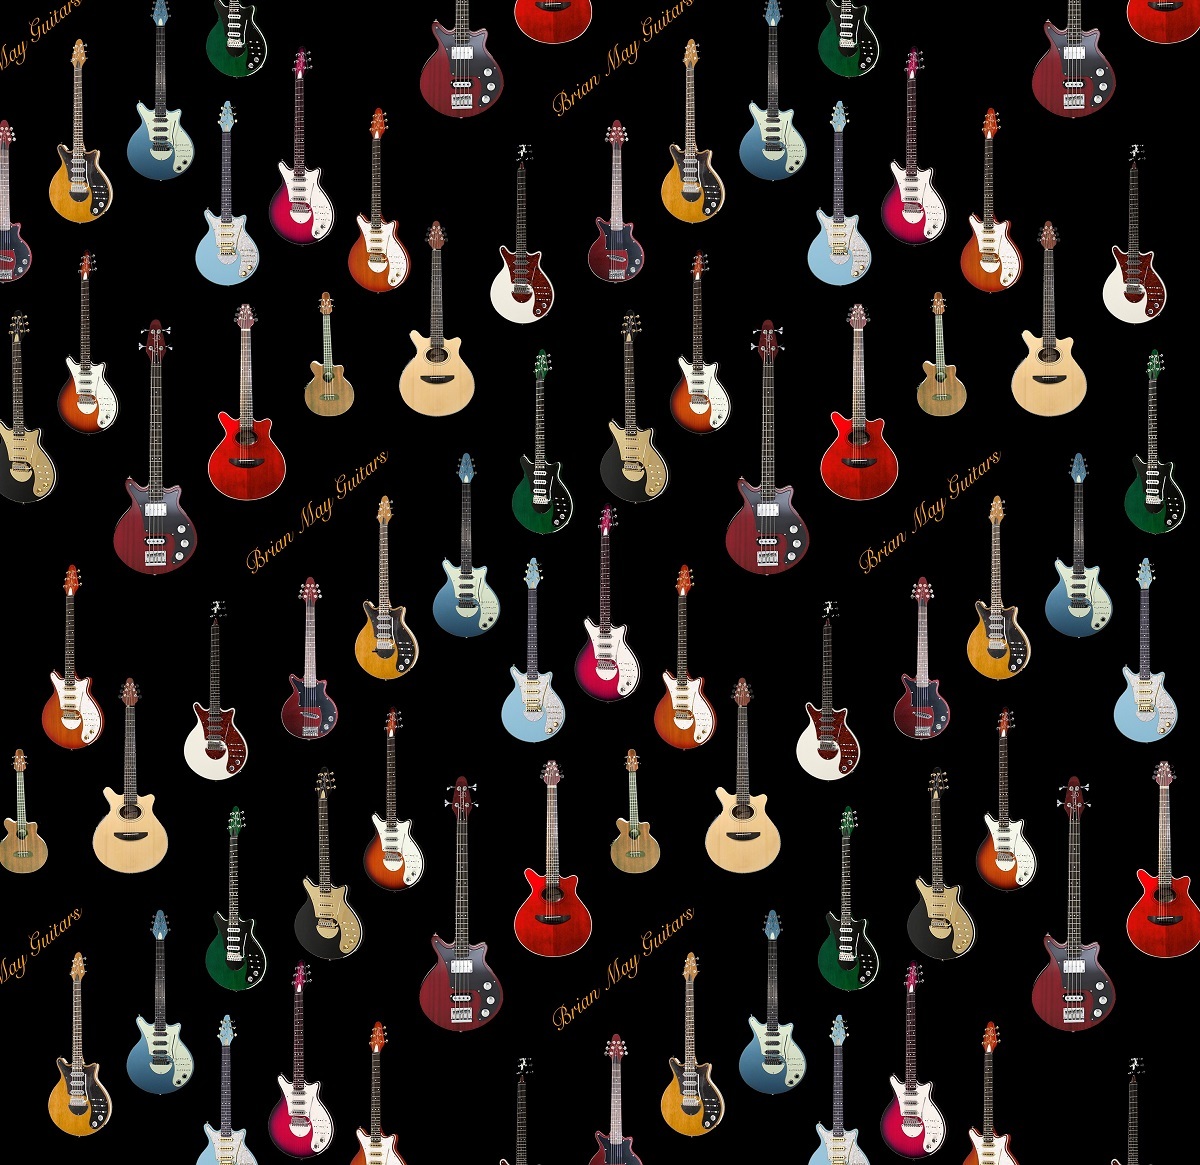 5位 Brian May Guitar スカーフ